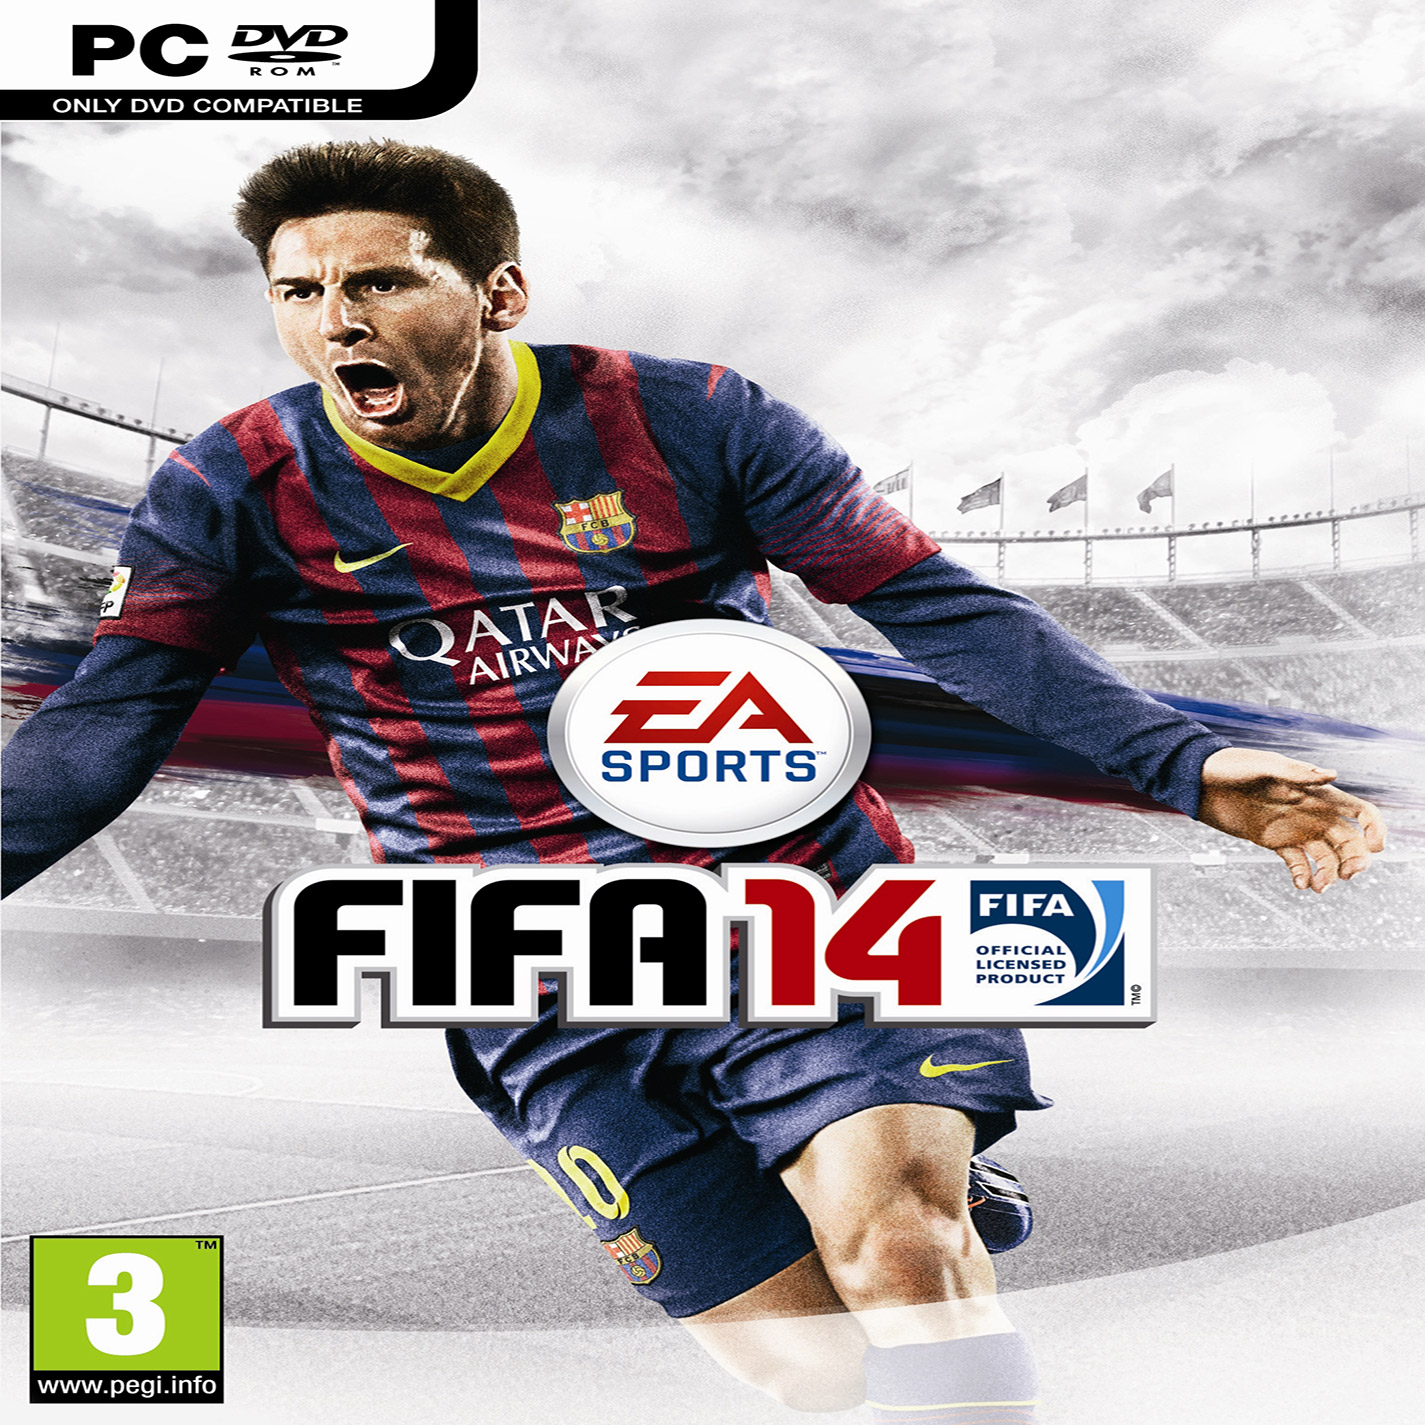 FIFA 14 - predn CD obal